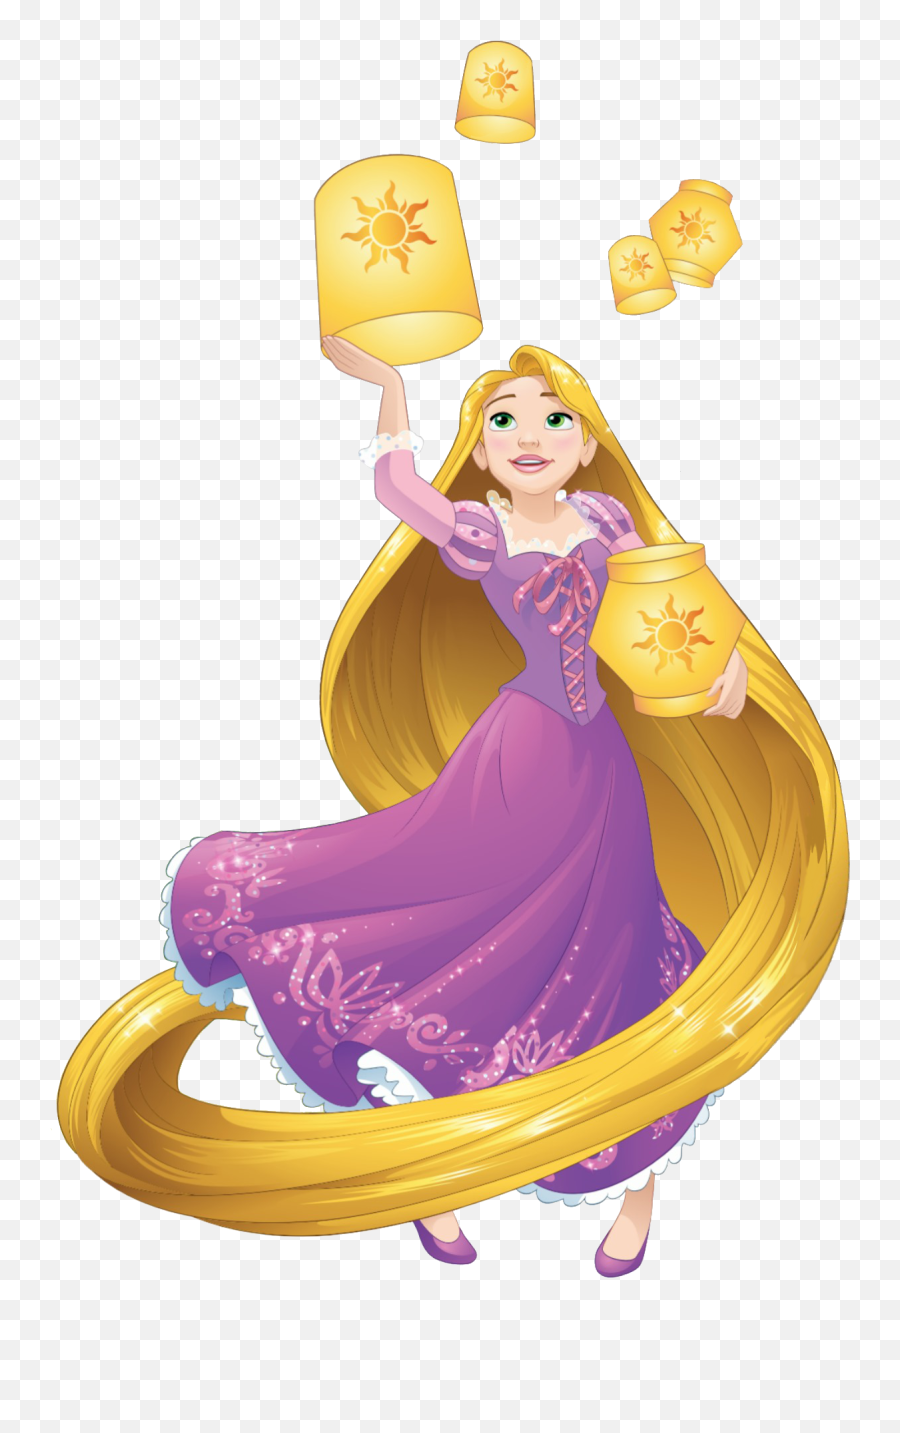 Rapunzel Clipart Transparent Background - Disney Princess Rapunzel Hd Png,Rapunzel Transparent Background